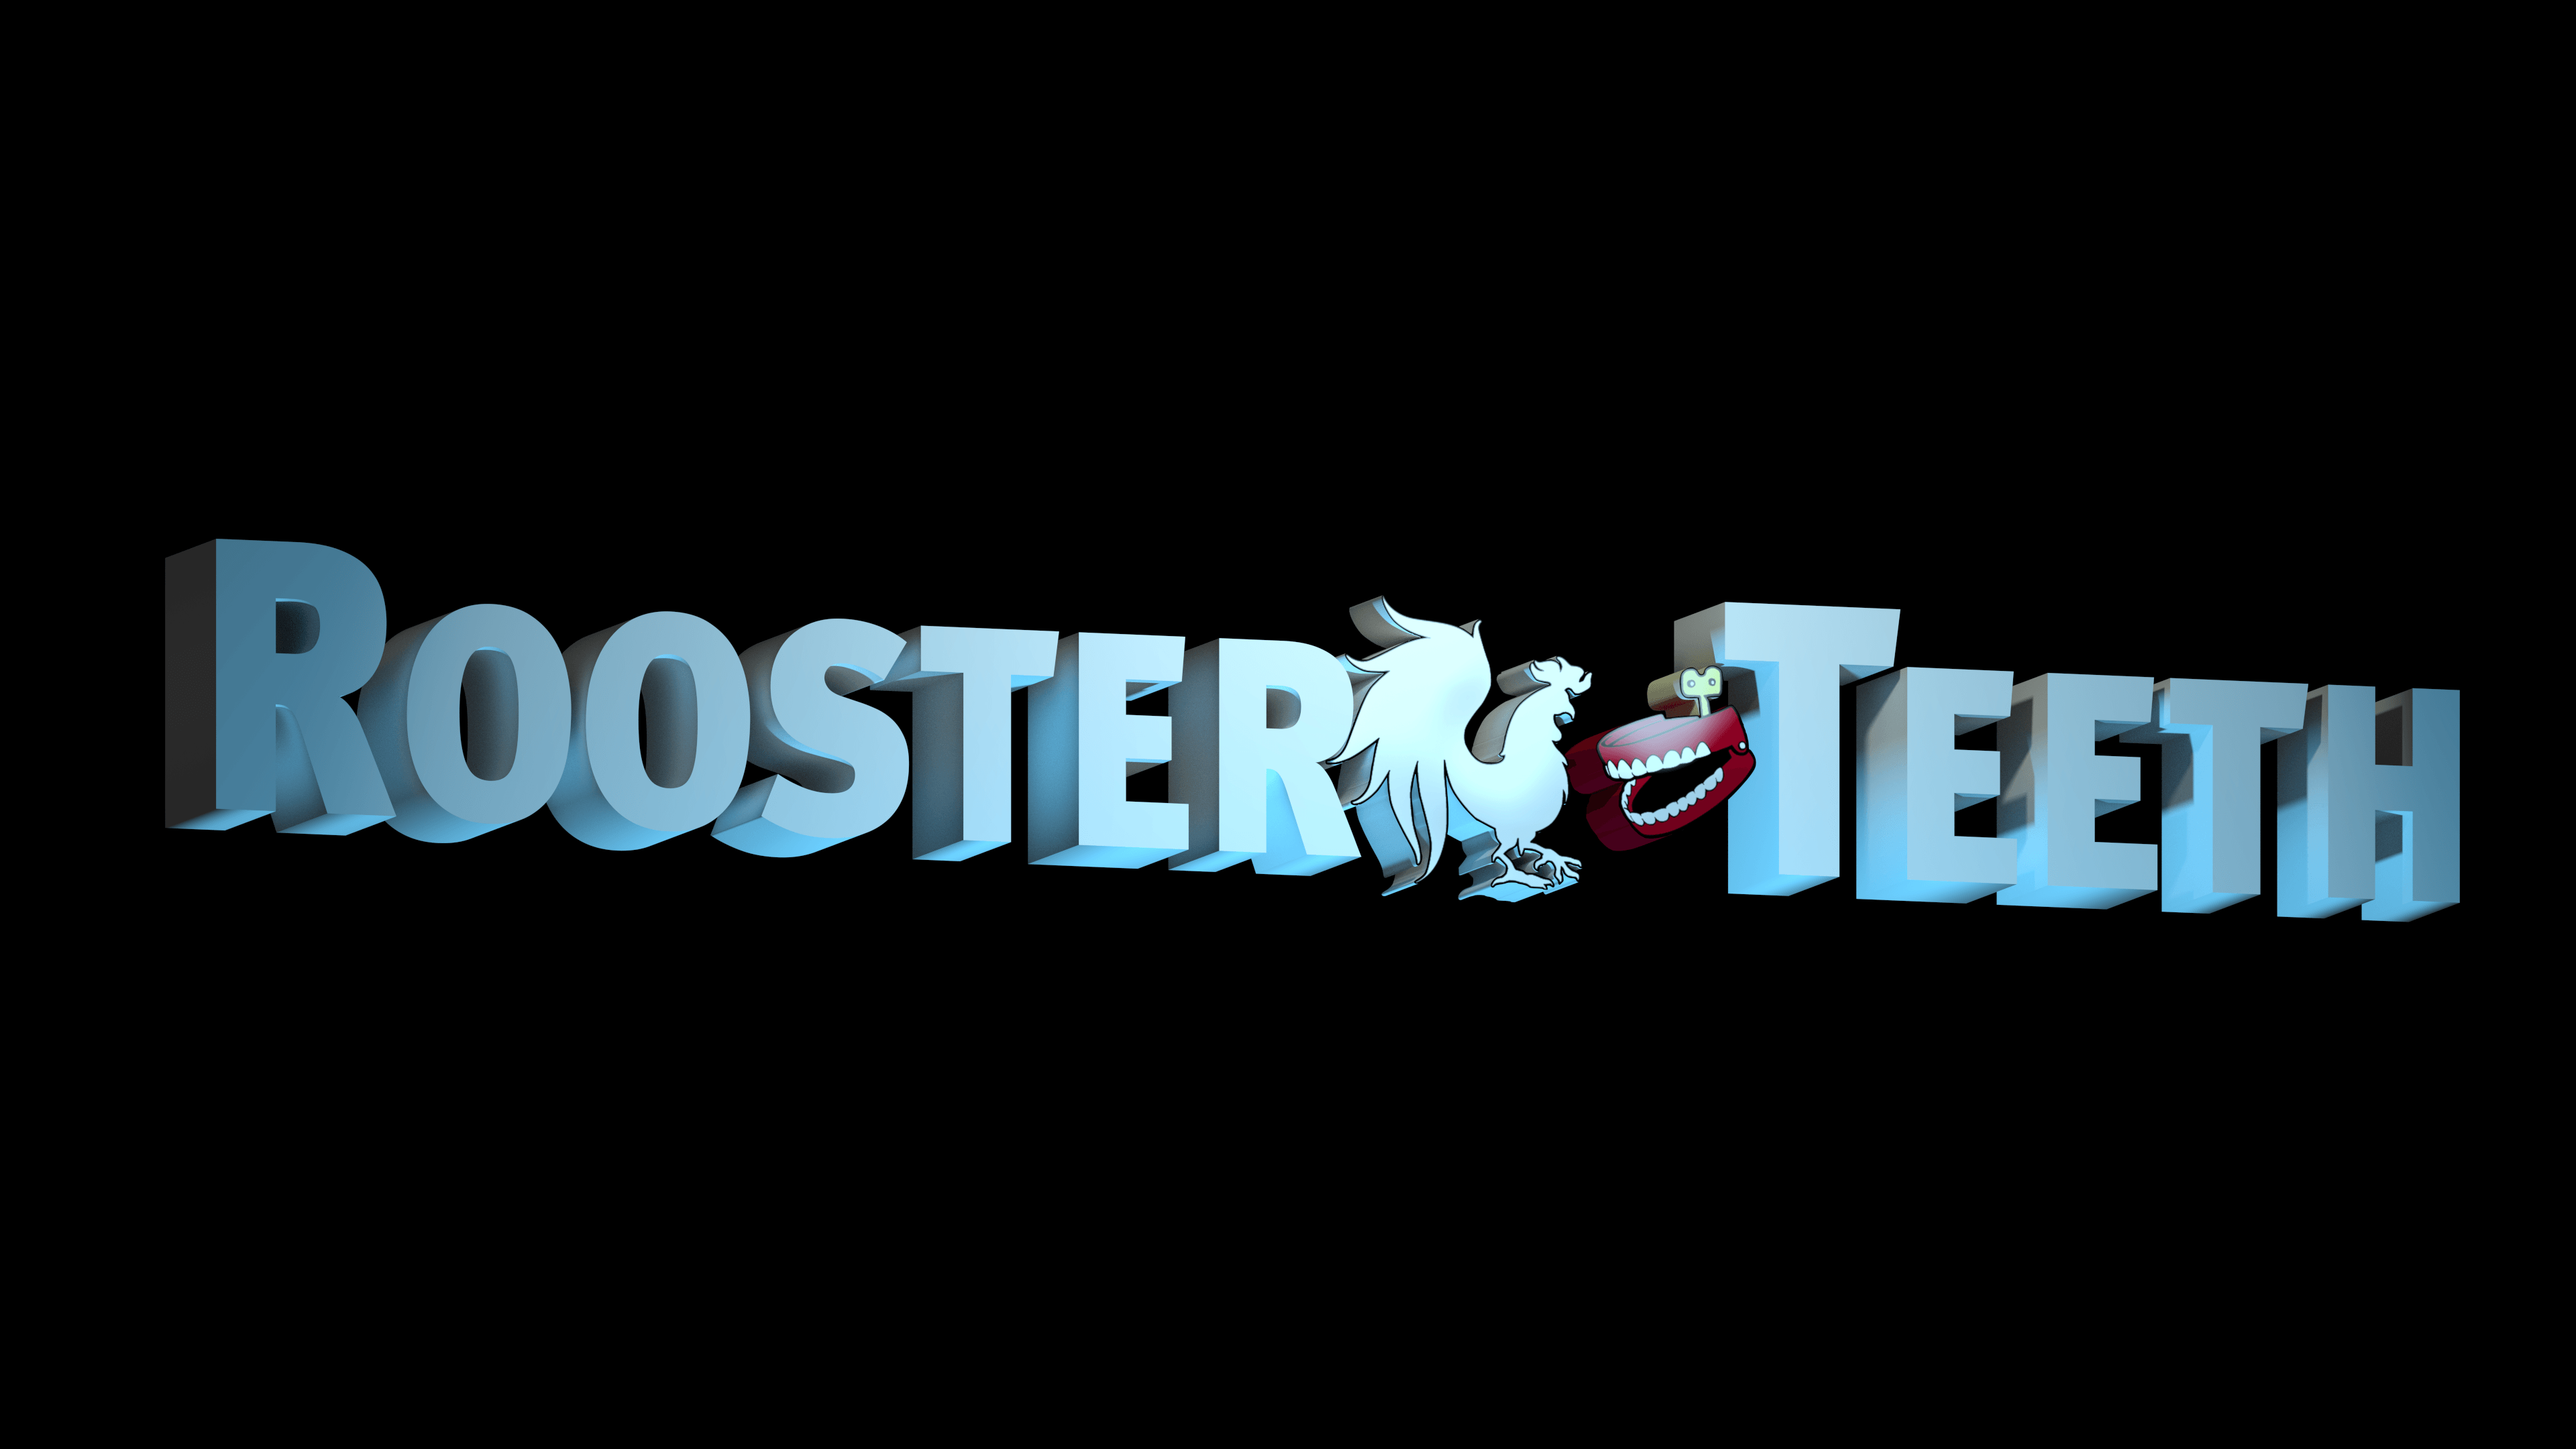 Rooster Teeth Logo - 4K] Custom 3D Rooster Teeth Logo Wallpaper : roosterteeth